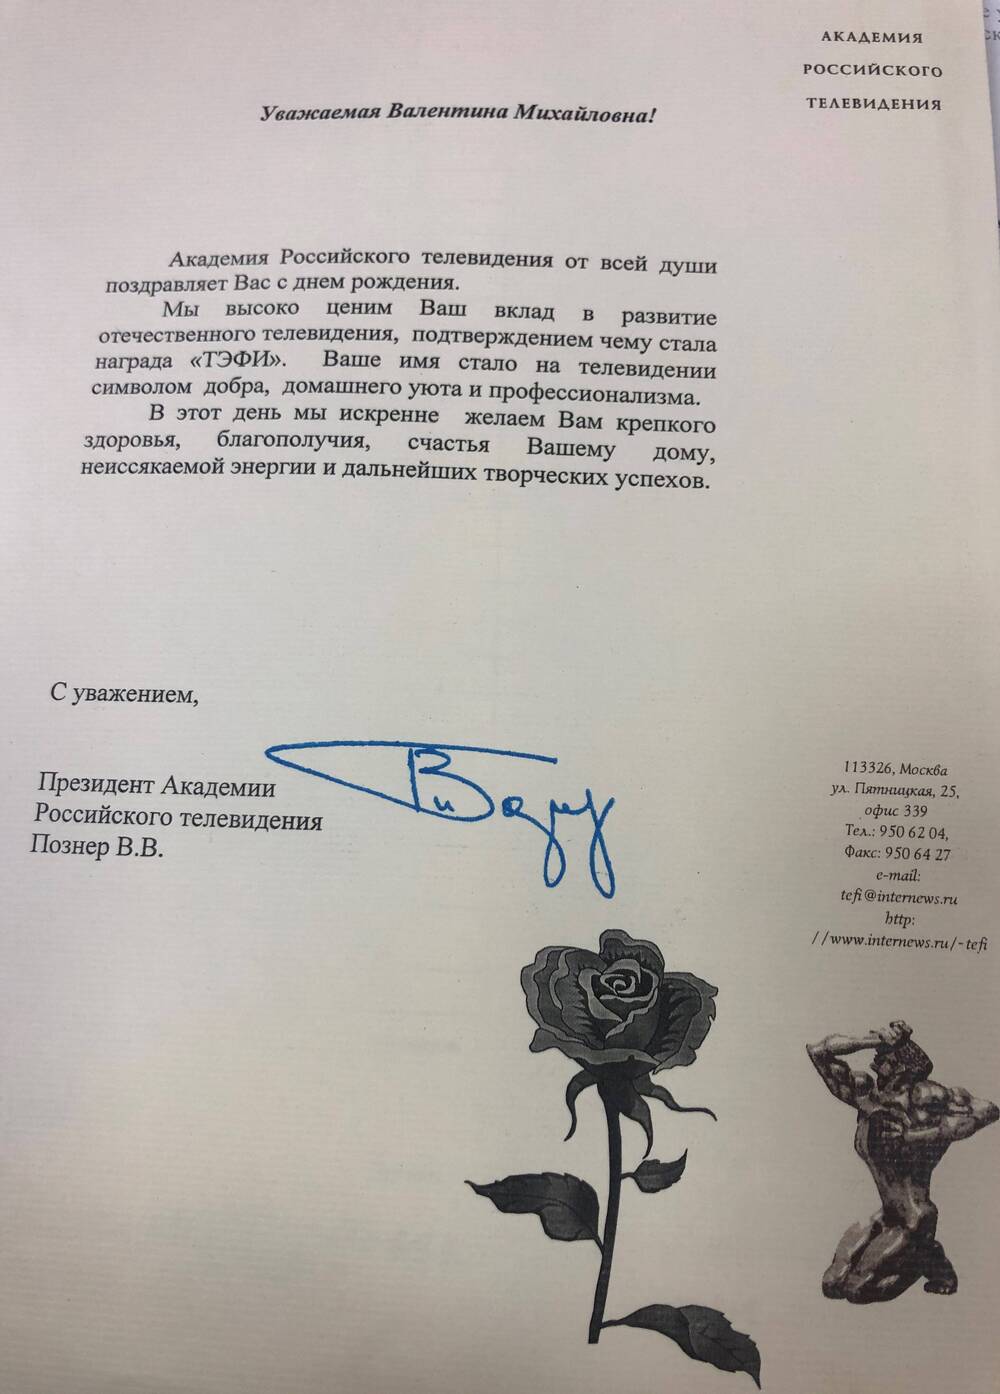 Поздравление В.М.Леонтьевой  с днем рождения от академии Российского телевидения, подпись В.В.Познер.